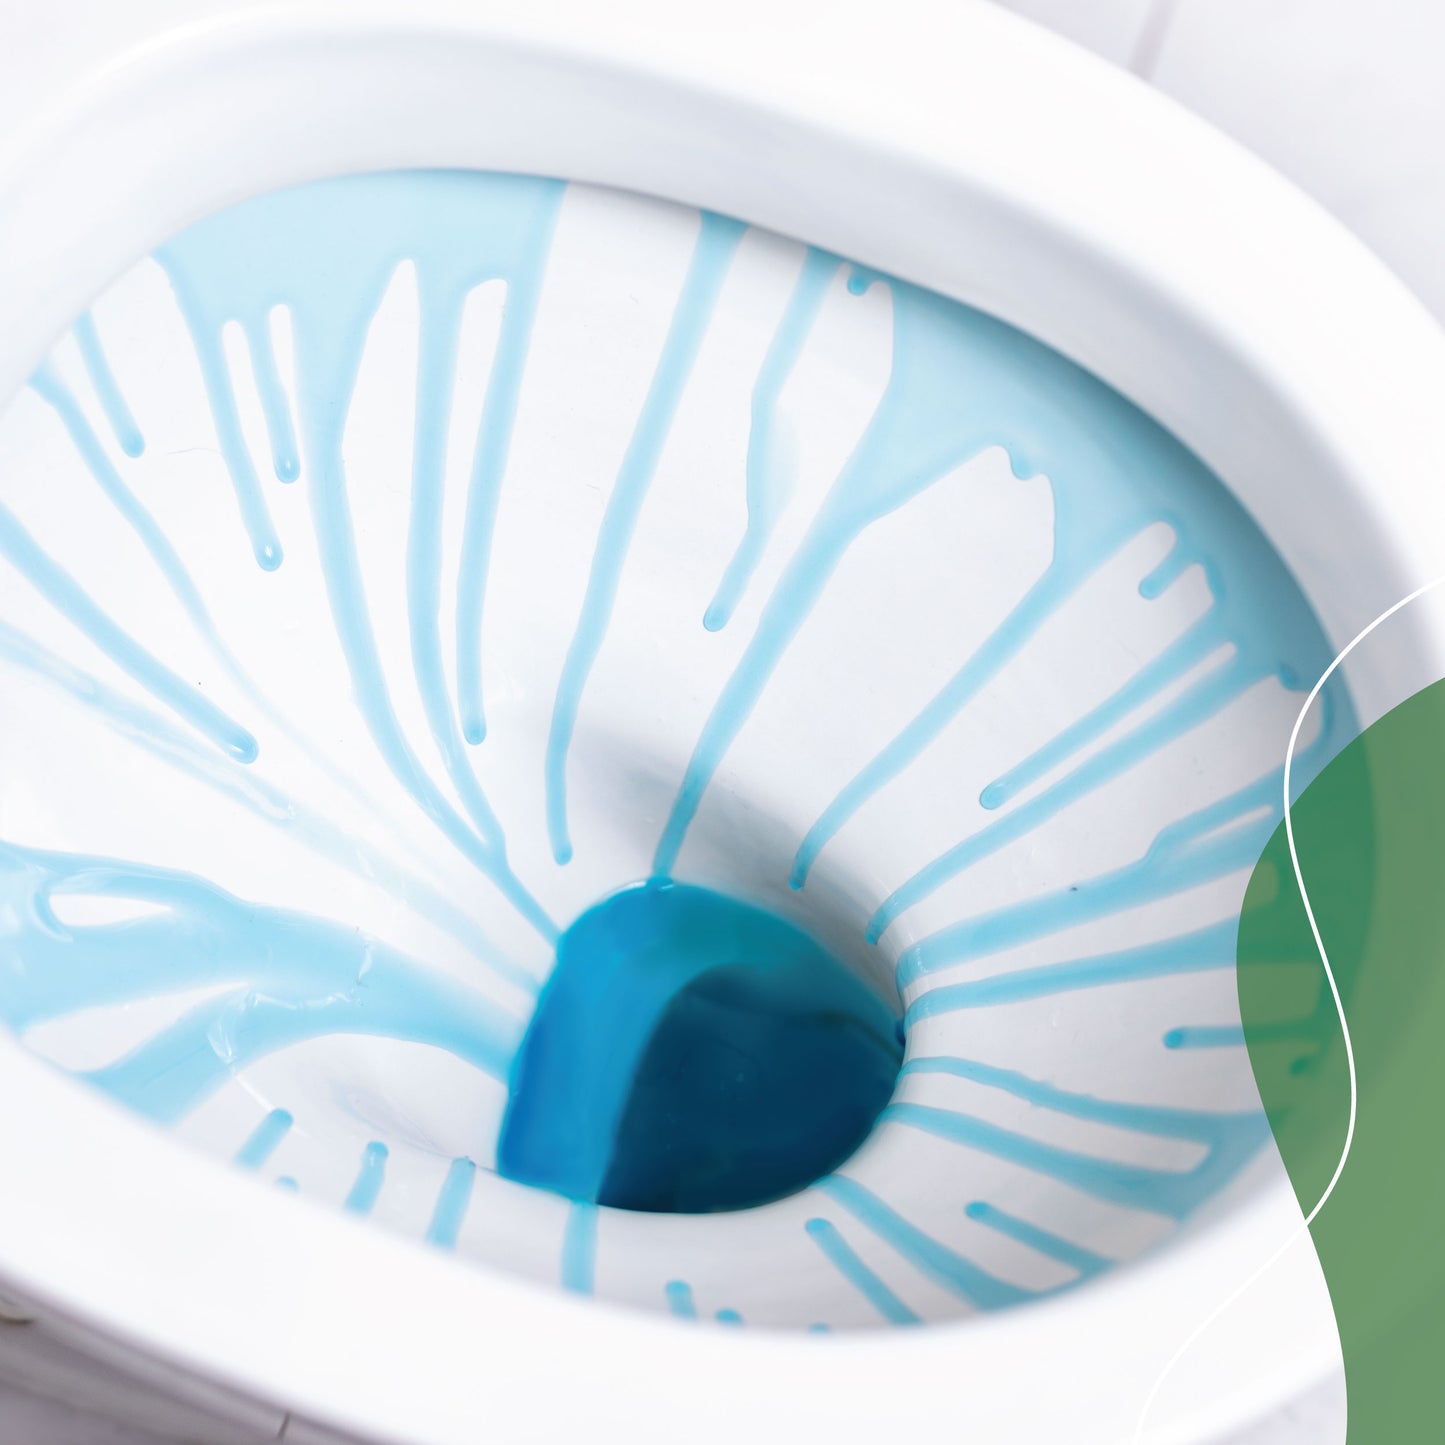 Kit Gel limpiador 100% ecológico para WC 2 en 1. Se adhiere a las paredes del WC limpiando y desmanchando el sarro.